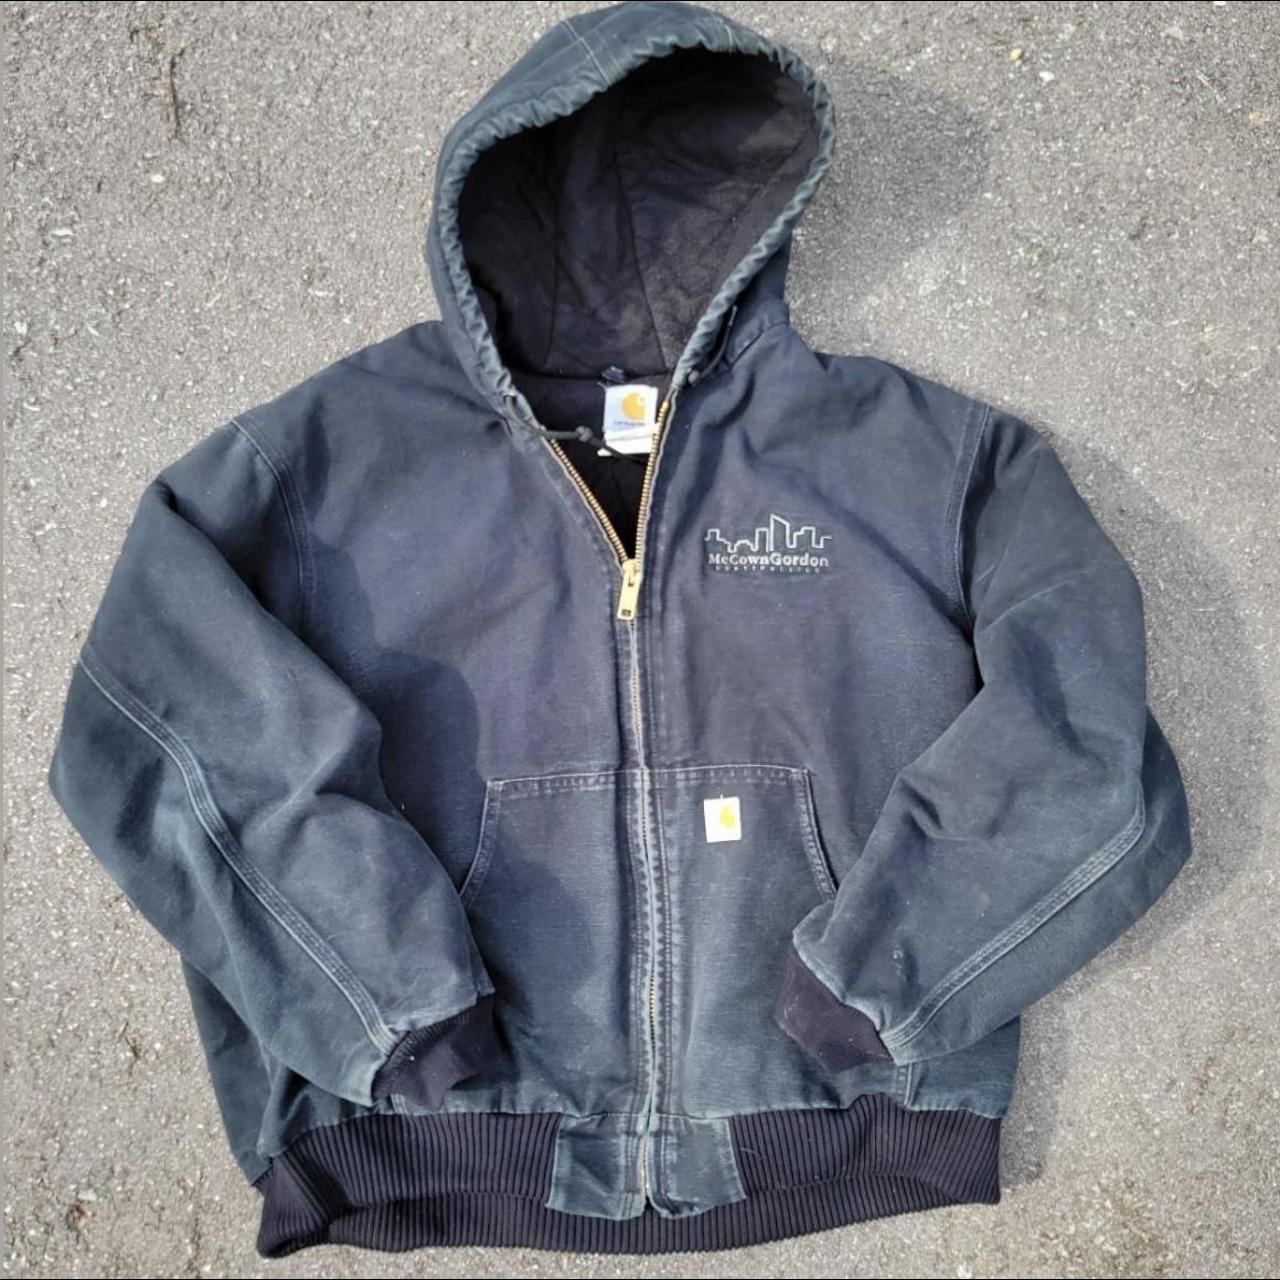 Vintage 90s Carhartt full zip workwear jacket. Black... - Depop